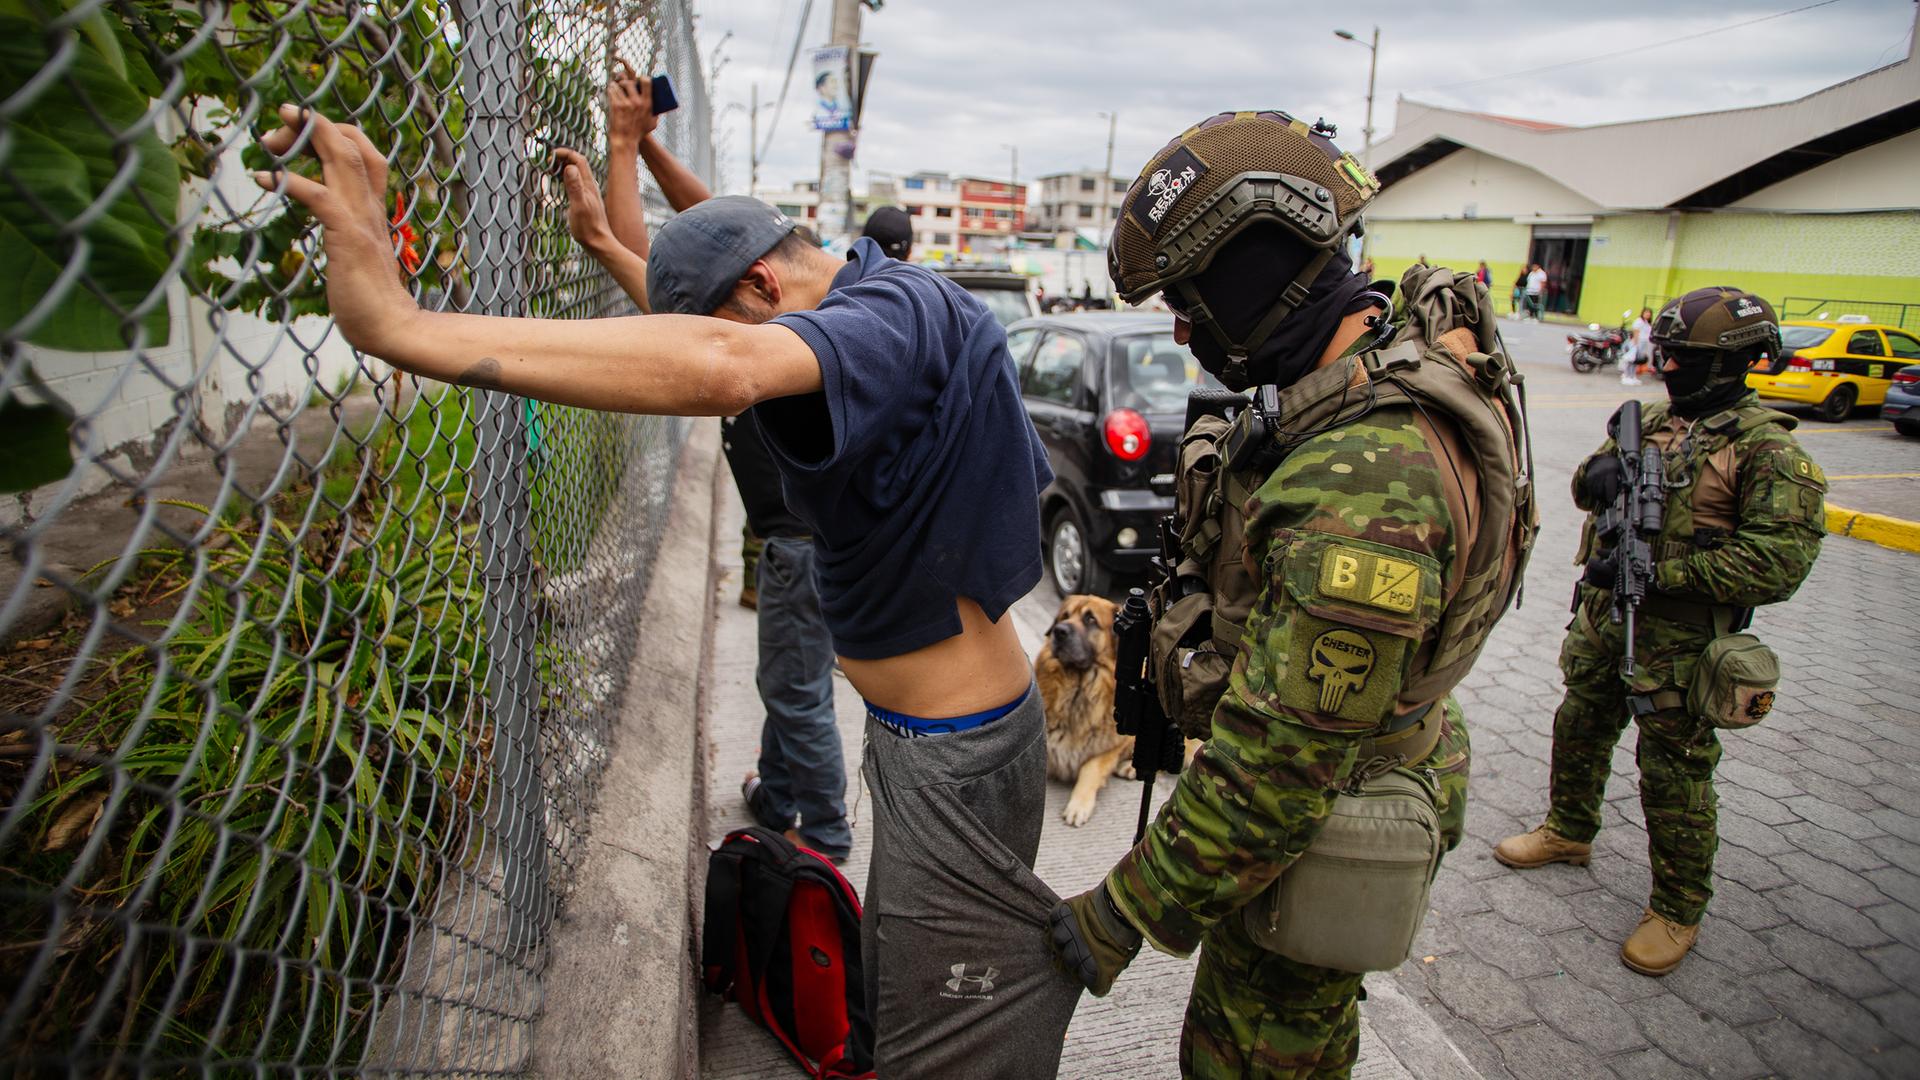 Gewalt in Ecuador: Die "Drogenterroristen" fordern den Staat heraus